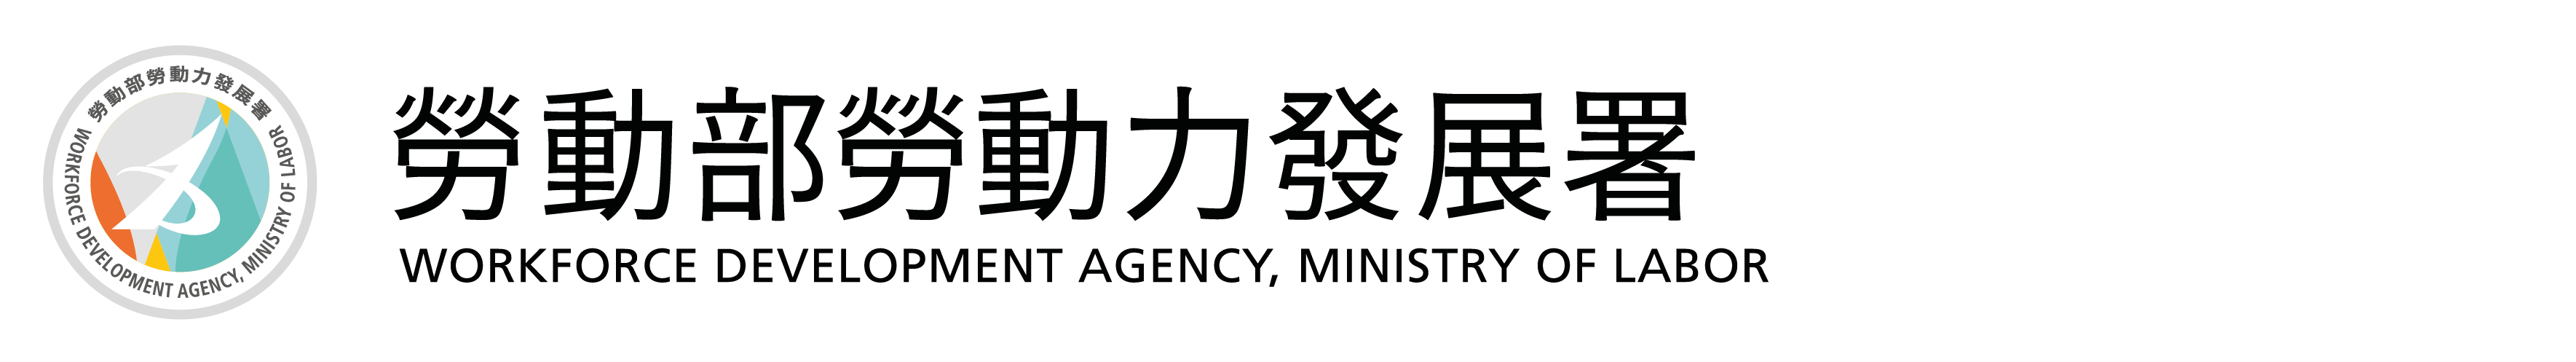 勞動部勞動力發展署Logo